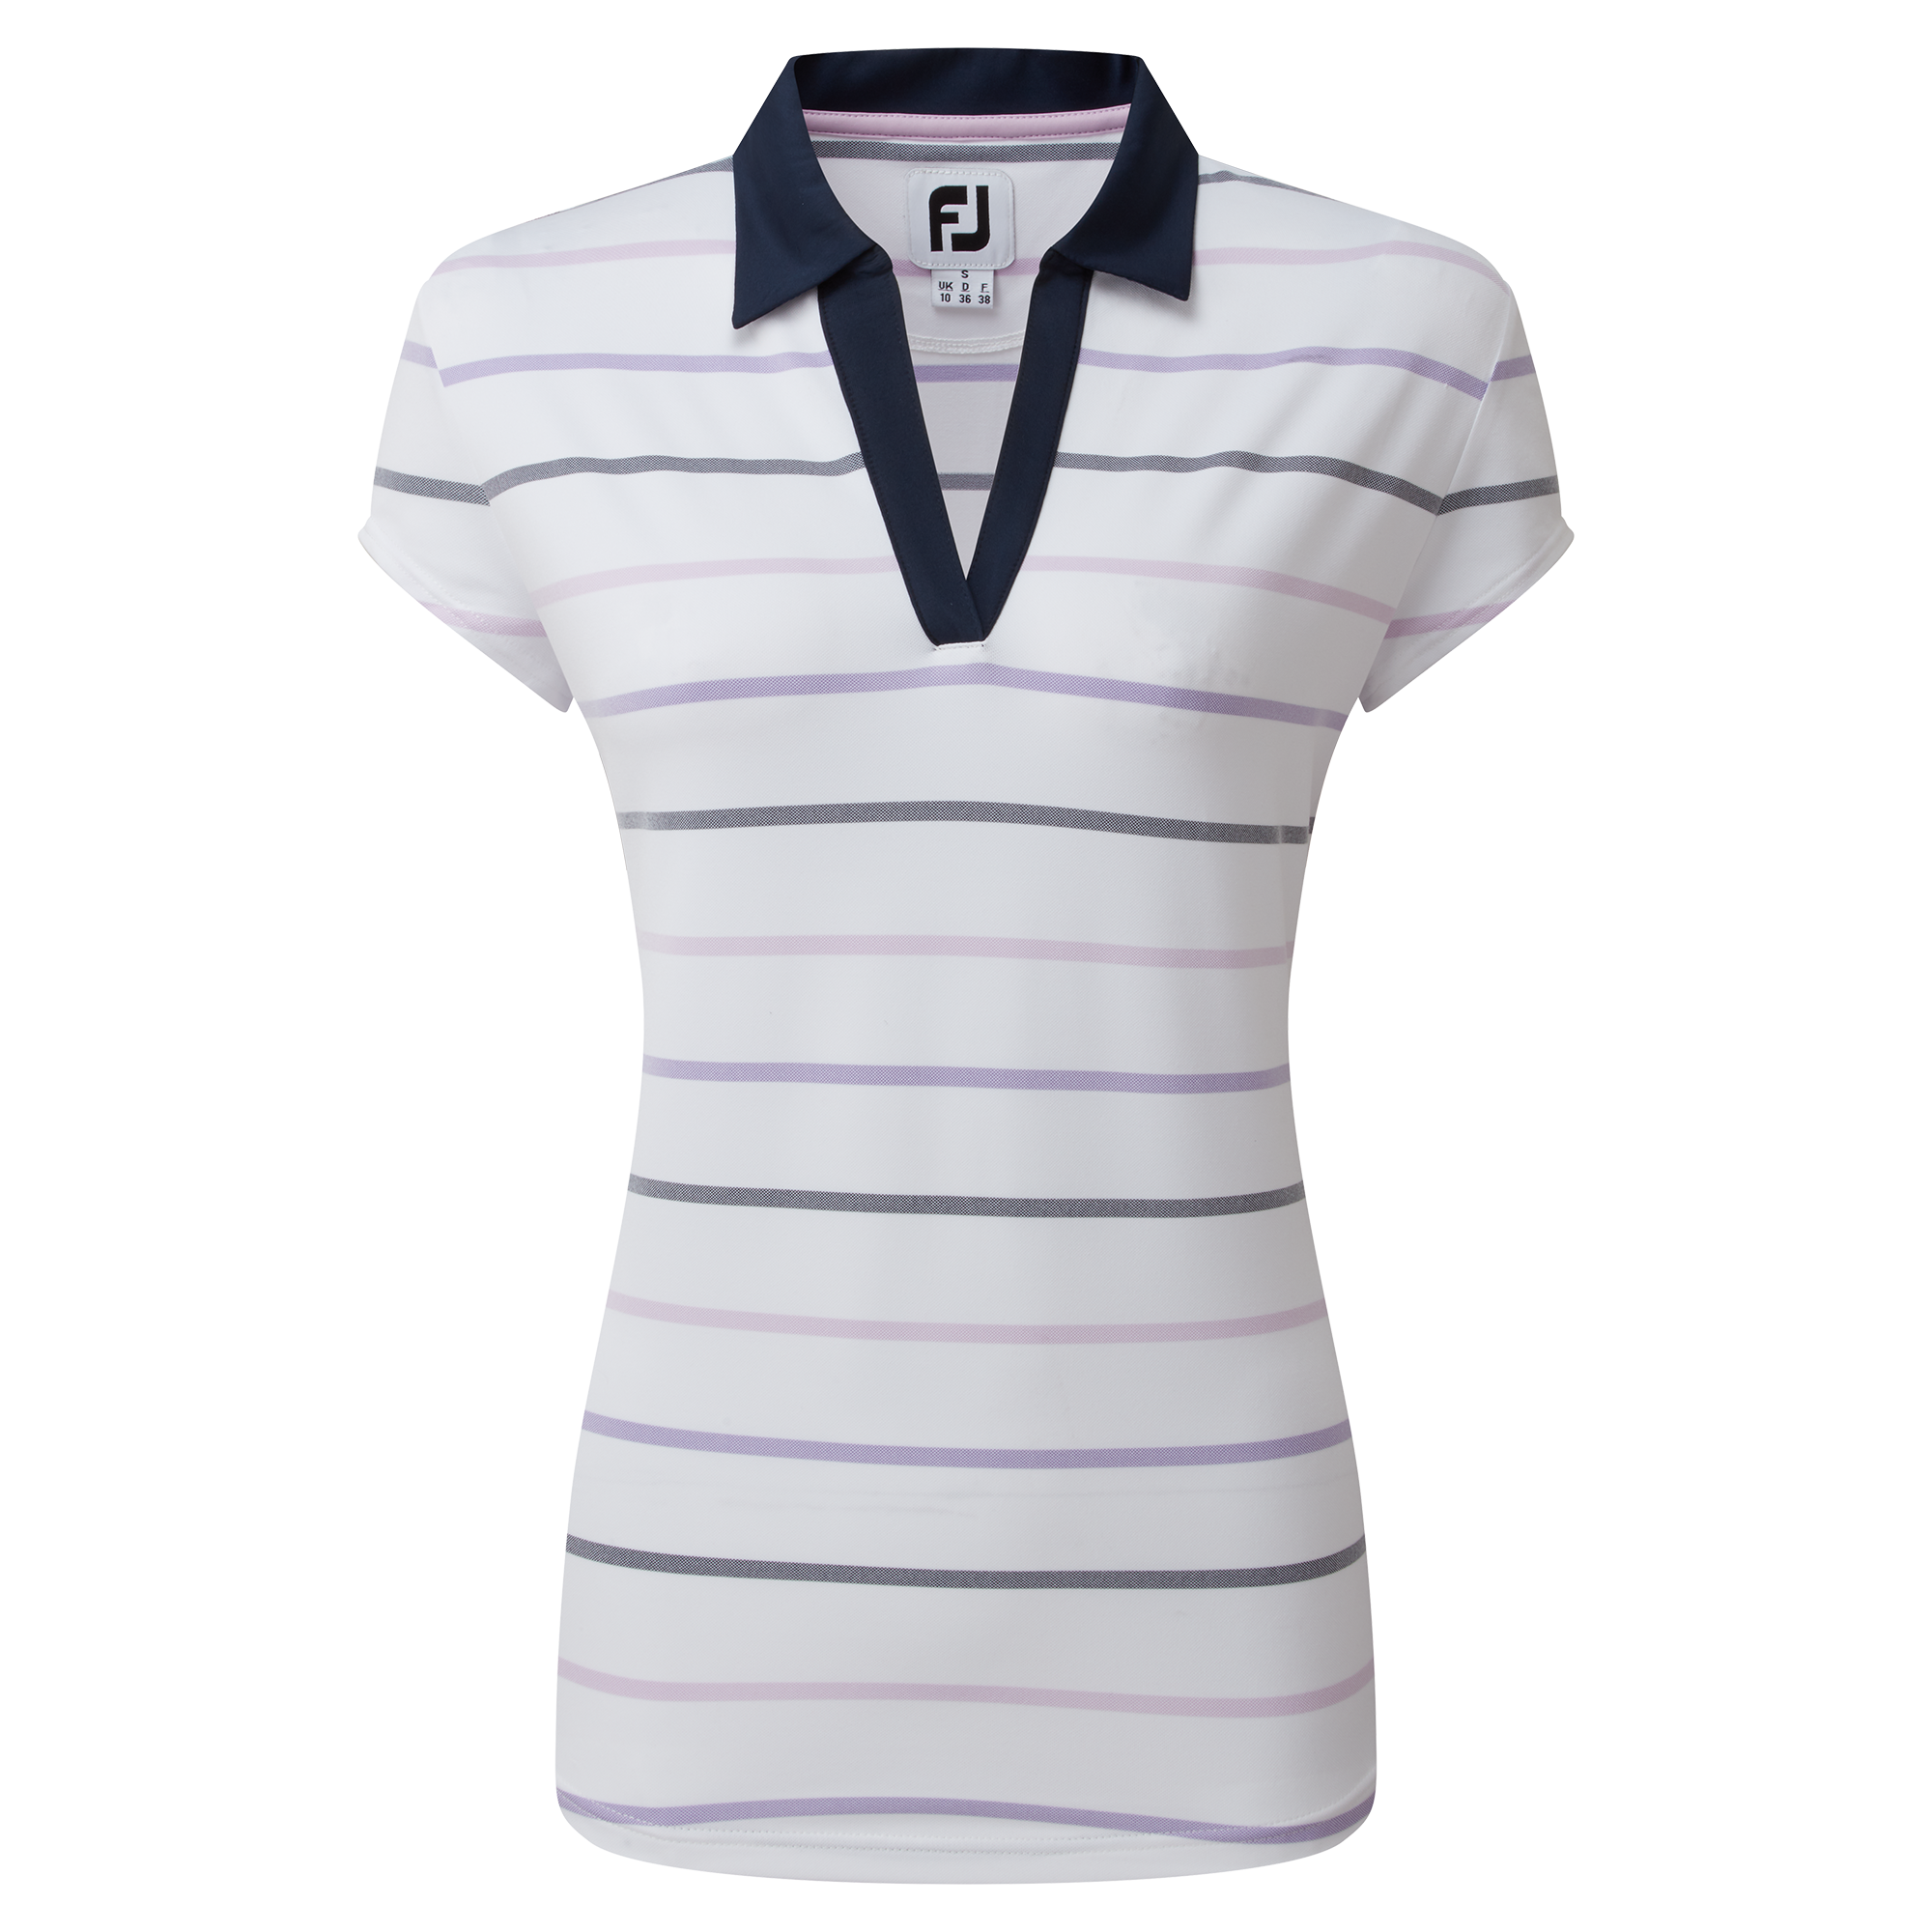 Levně FootJoy Birdseye Stripe Smooth Jacquard dámské golfové triko, bílé